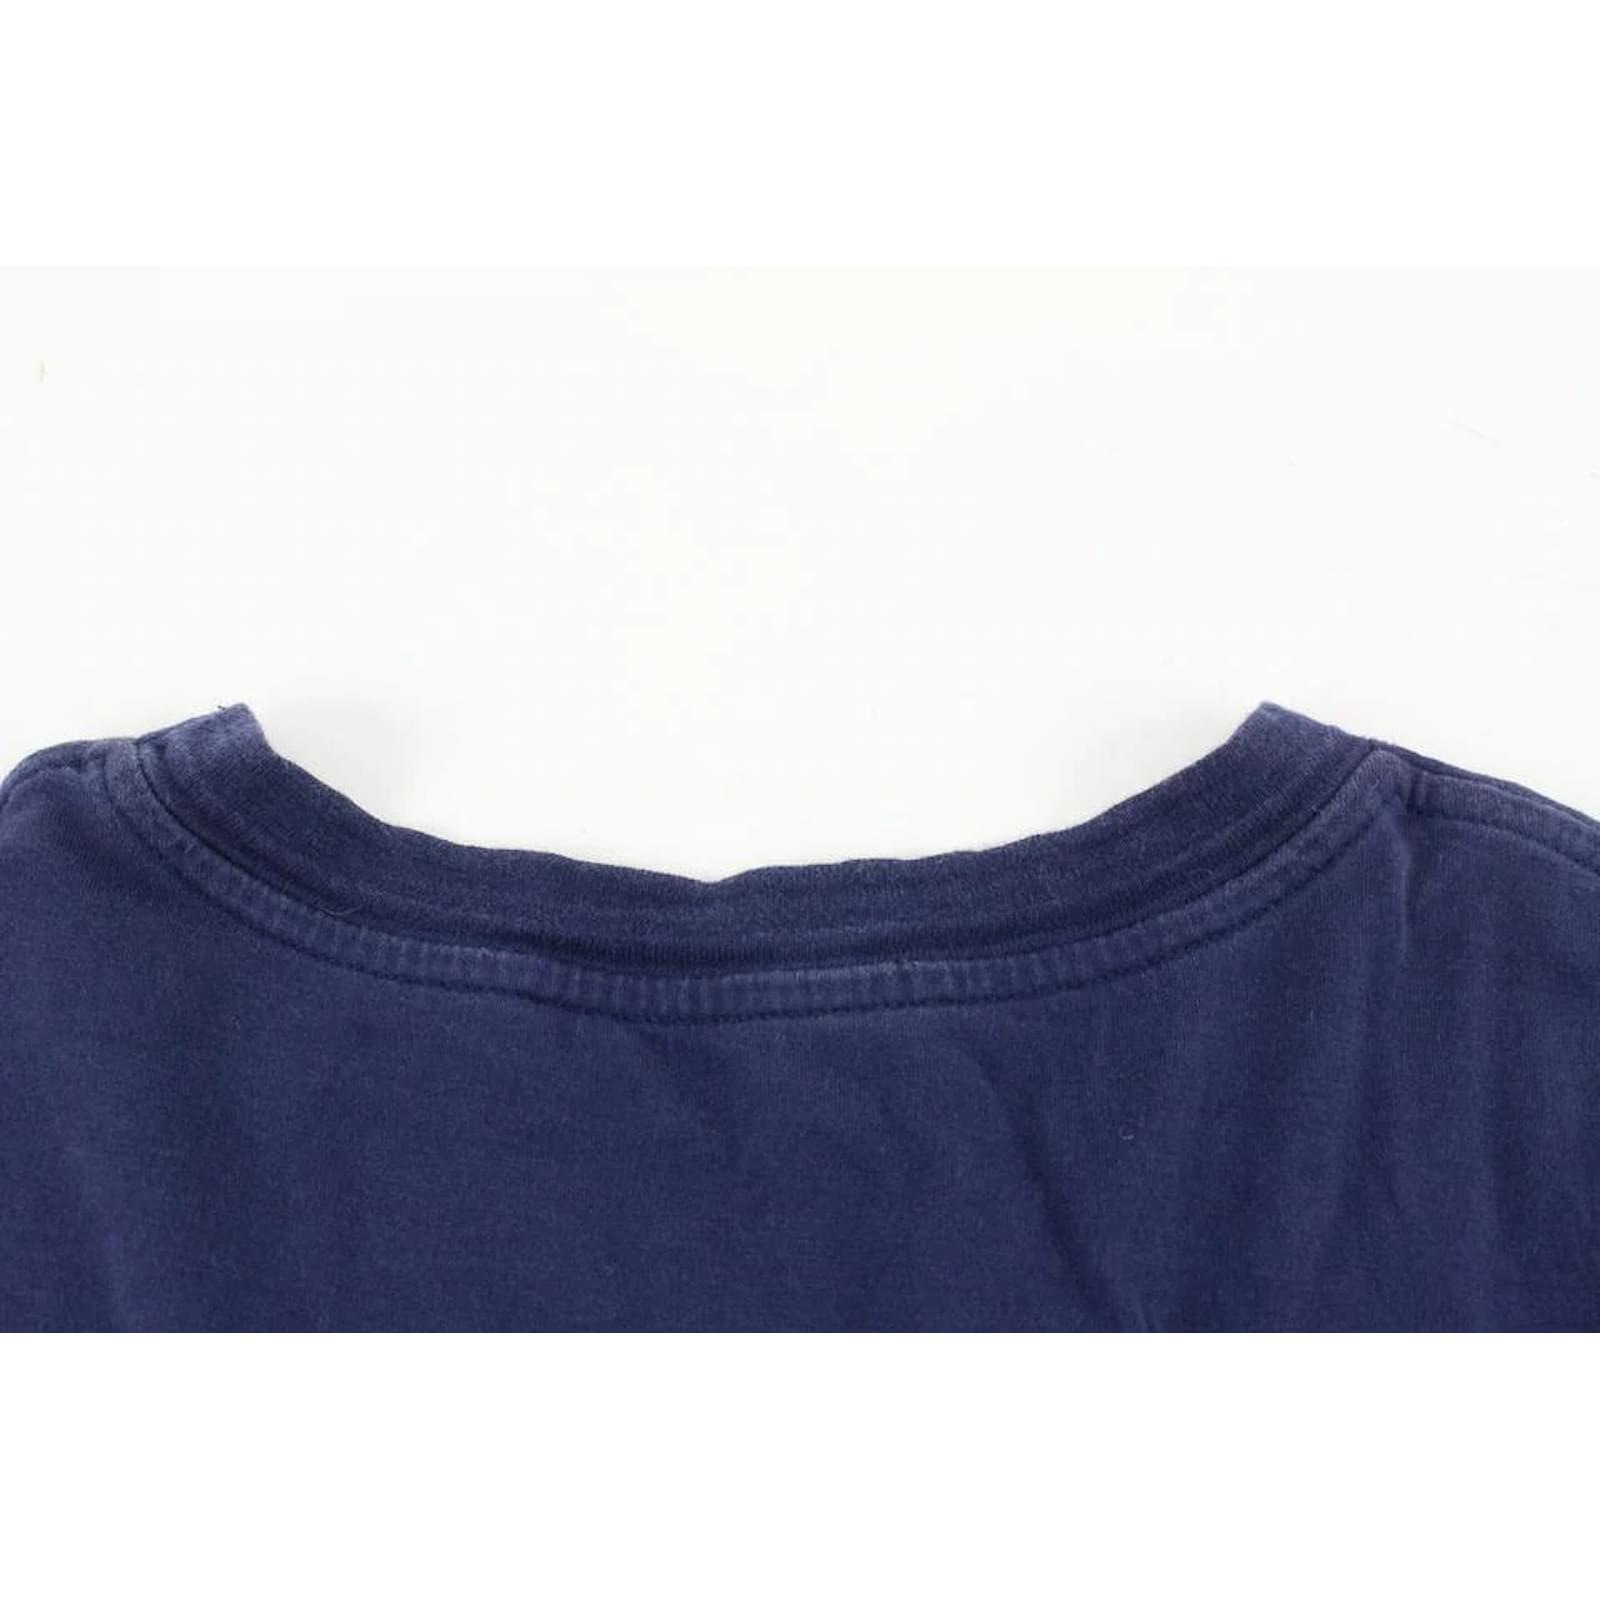 Louis Vuitton Men's XL Navy Blue Bear LV T-Shirt 114lv10